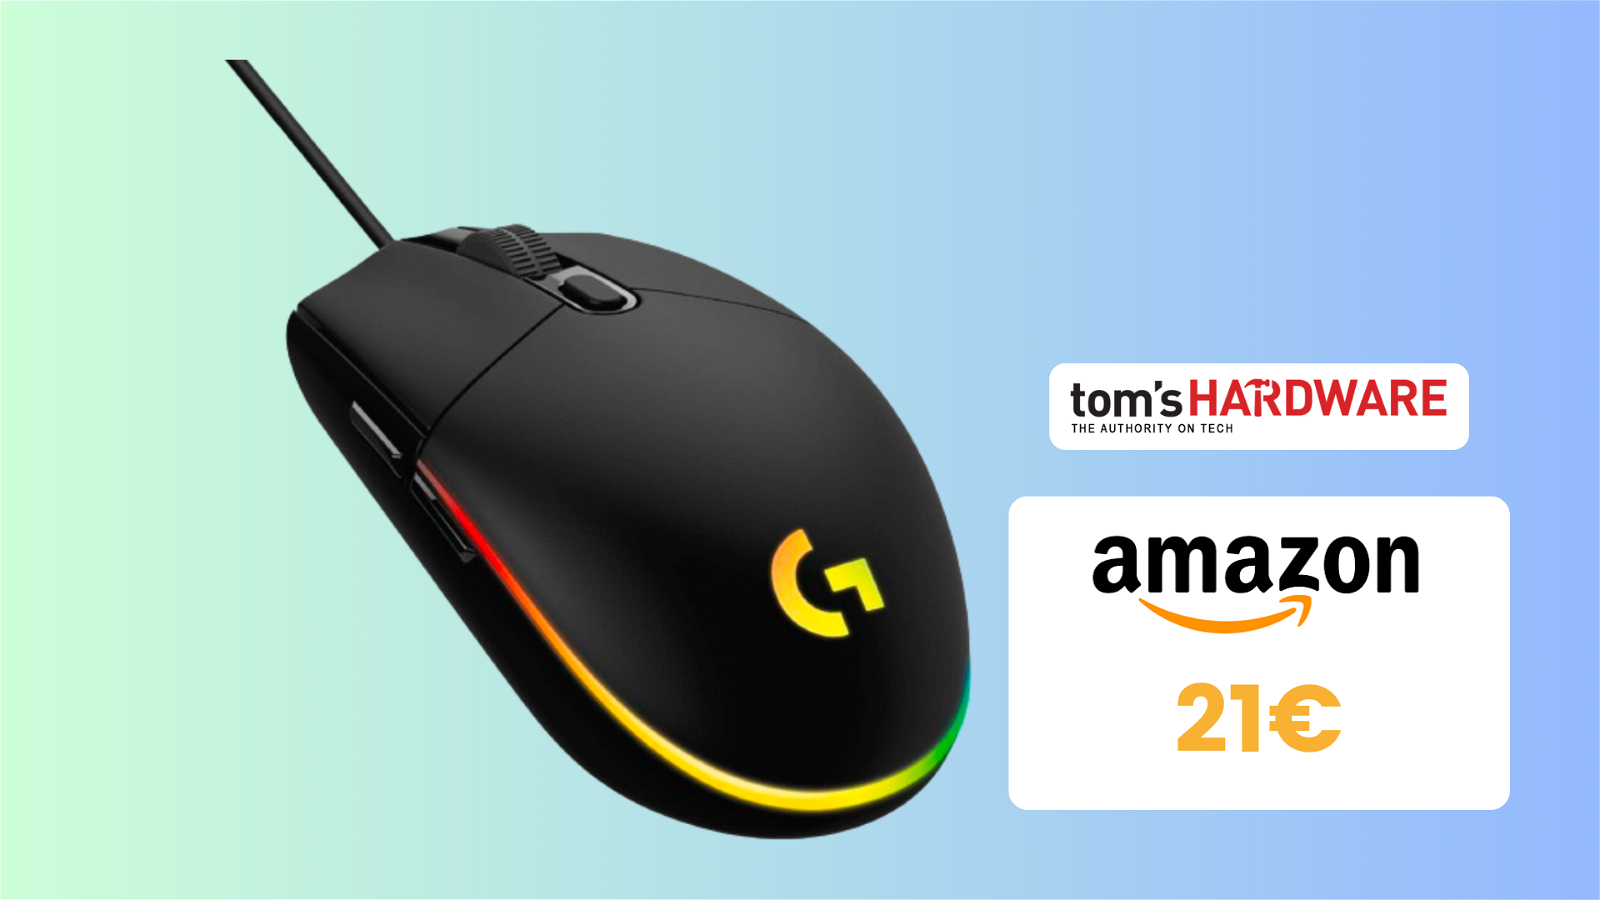 Immagine di Mouse Logitech G203 SOTTOCOSTO su Amazon, AFFARE a 21€